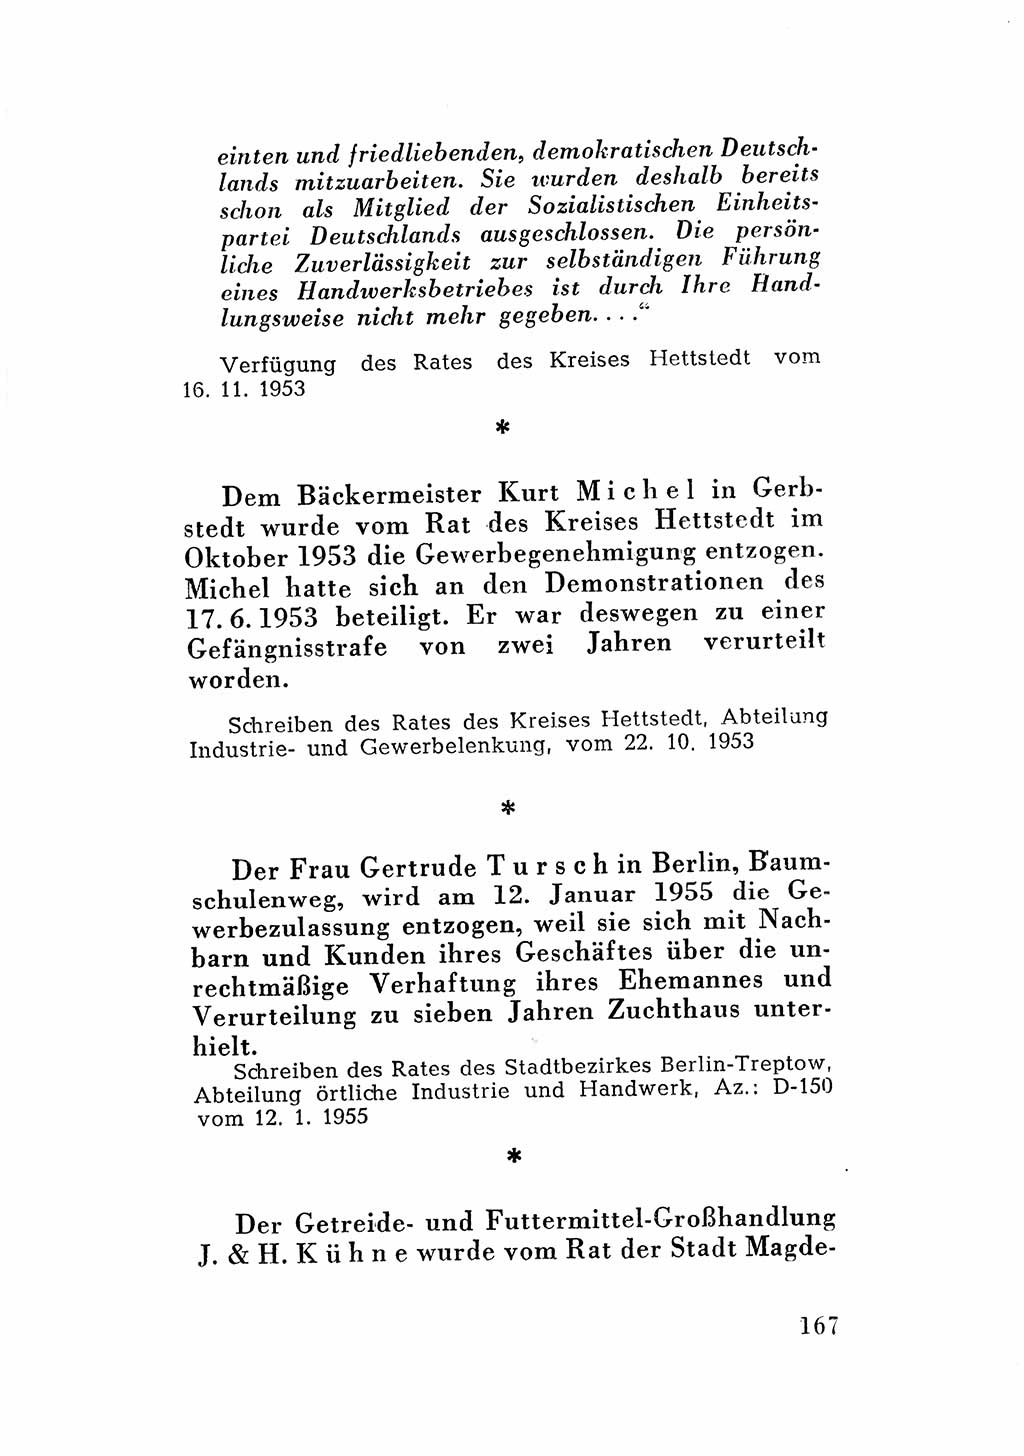 Katalog des Unrechts, Untersuchungsausschuß Freiheitlicher Juristen (UfJ) [Bundesrepublik Deutschland (BRD)] 1956, Seite 167 (Kat. UnR. UfJ BRD 1956, S. 167)